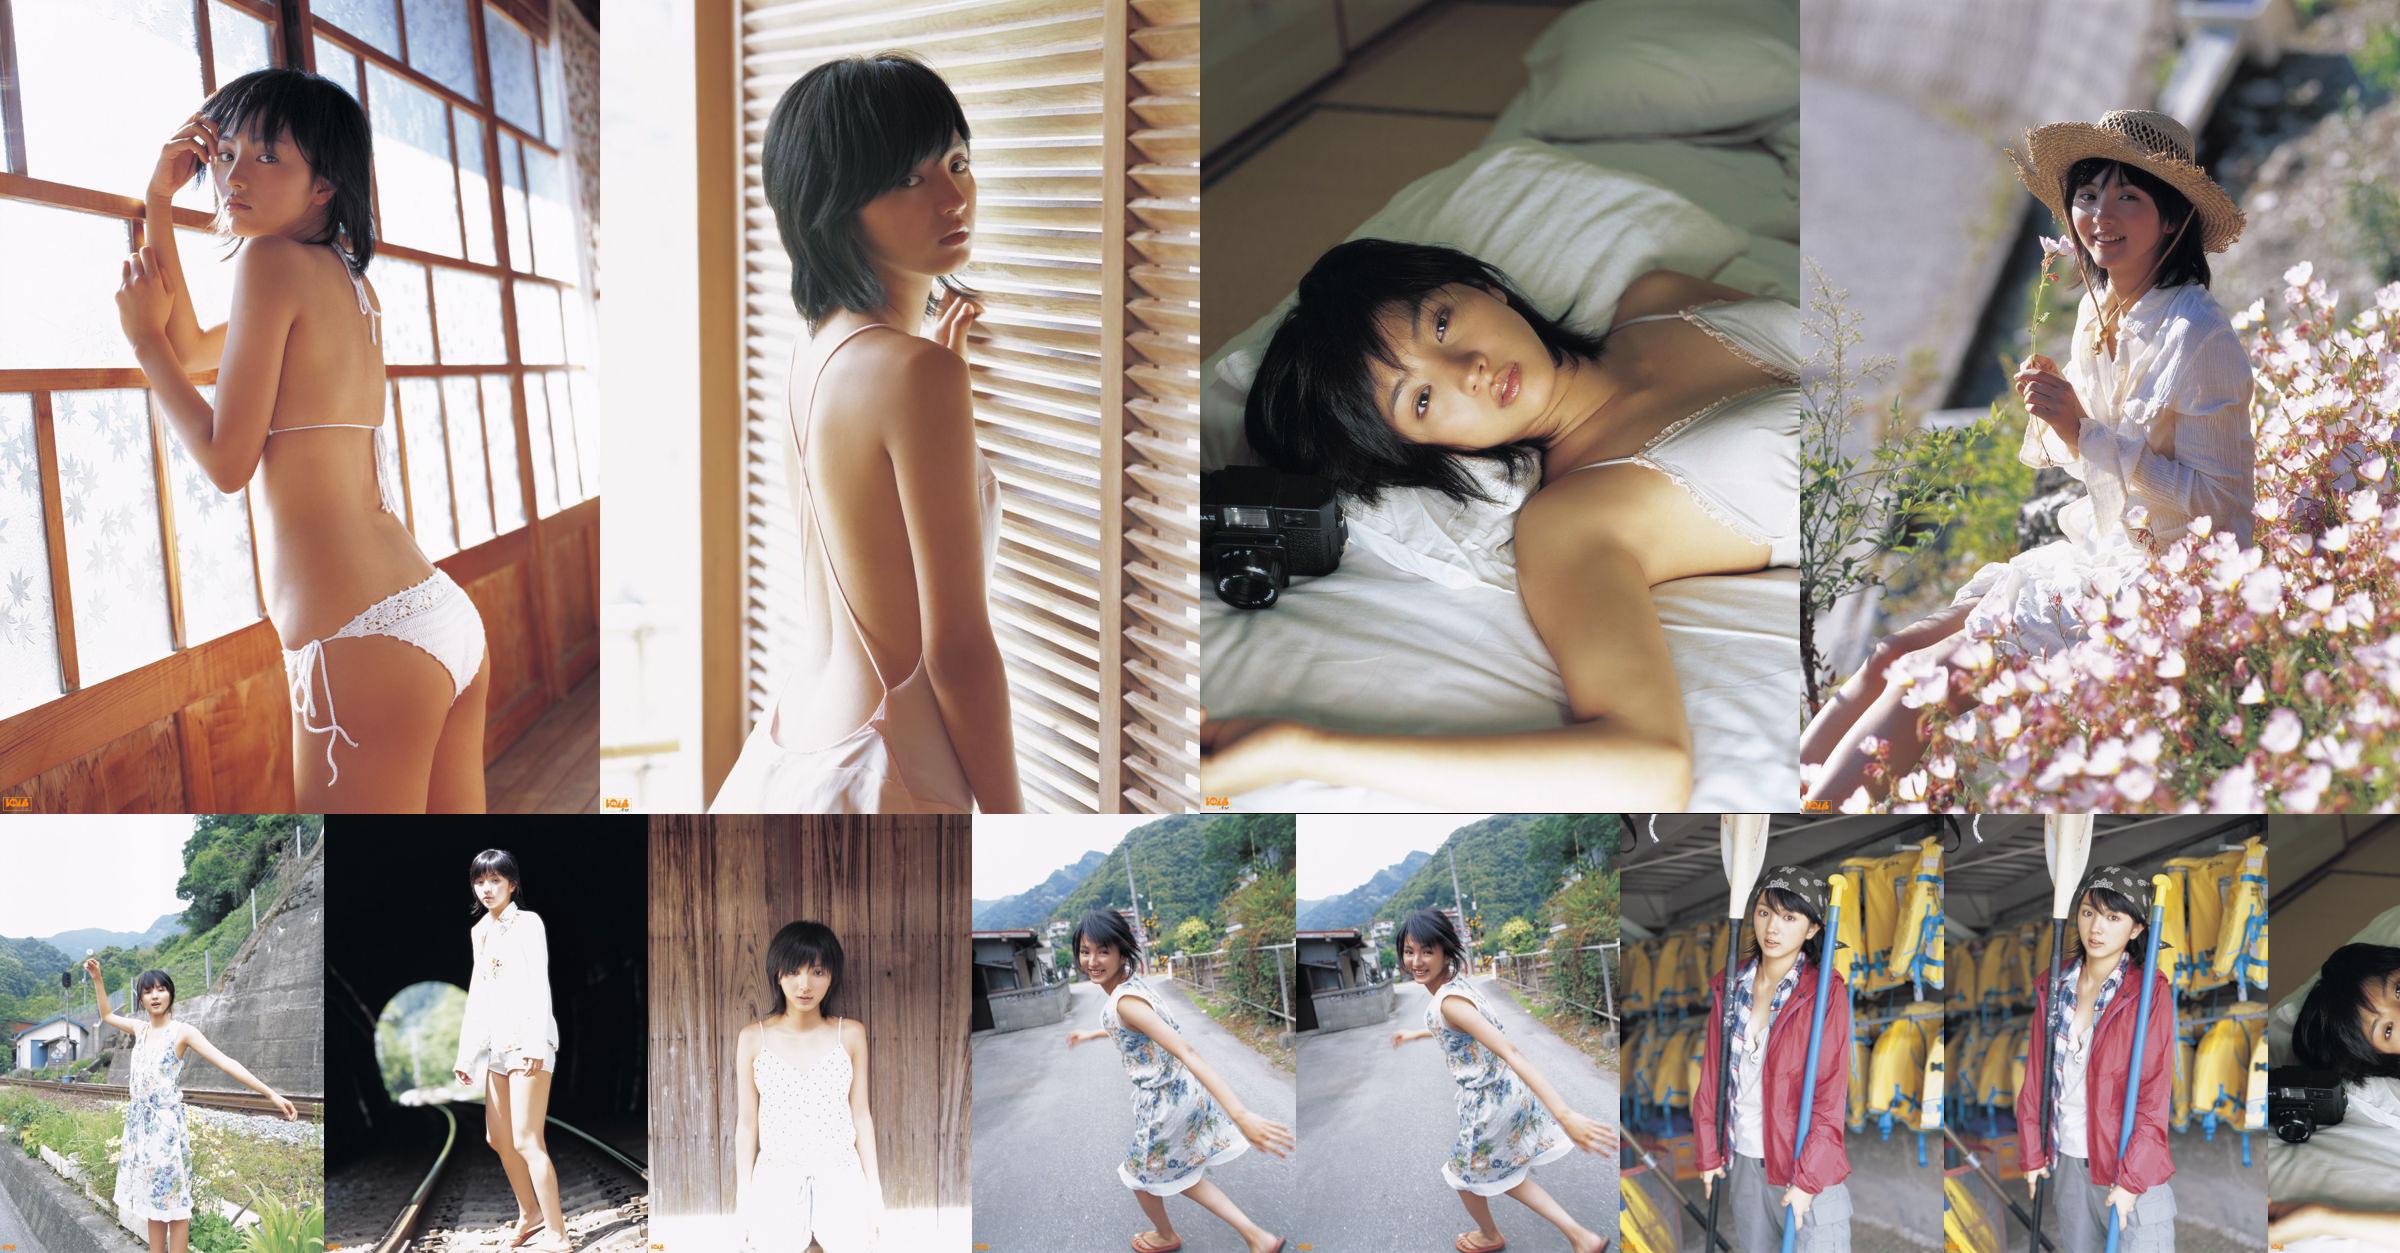 [Bomb.TV] Tháng 8 năm 2005 Hikari Mitsushima Hikari Mitsushima / Manshima Hikari No.9e1286 Trang 1